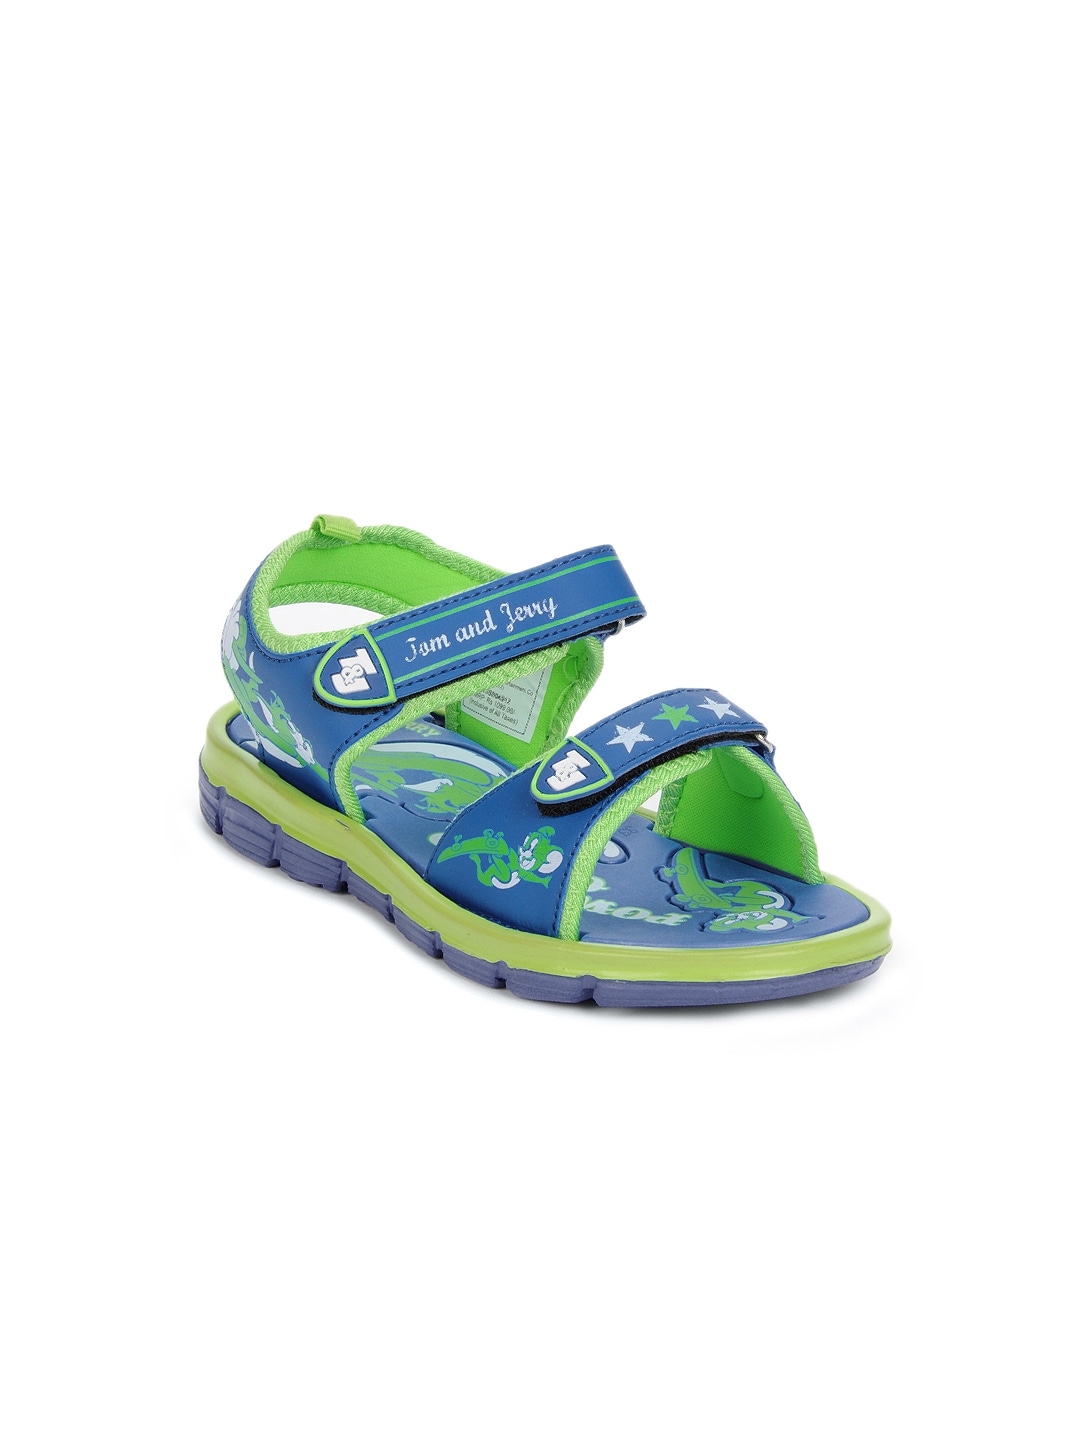 Warner Bros Kids Unisex Blue sandals